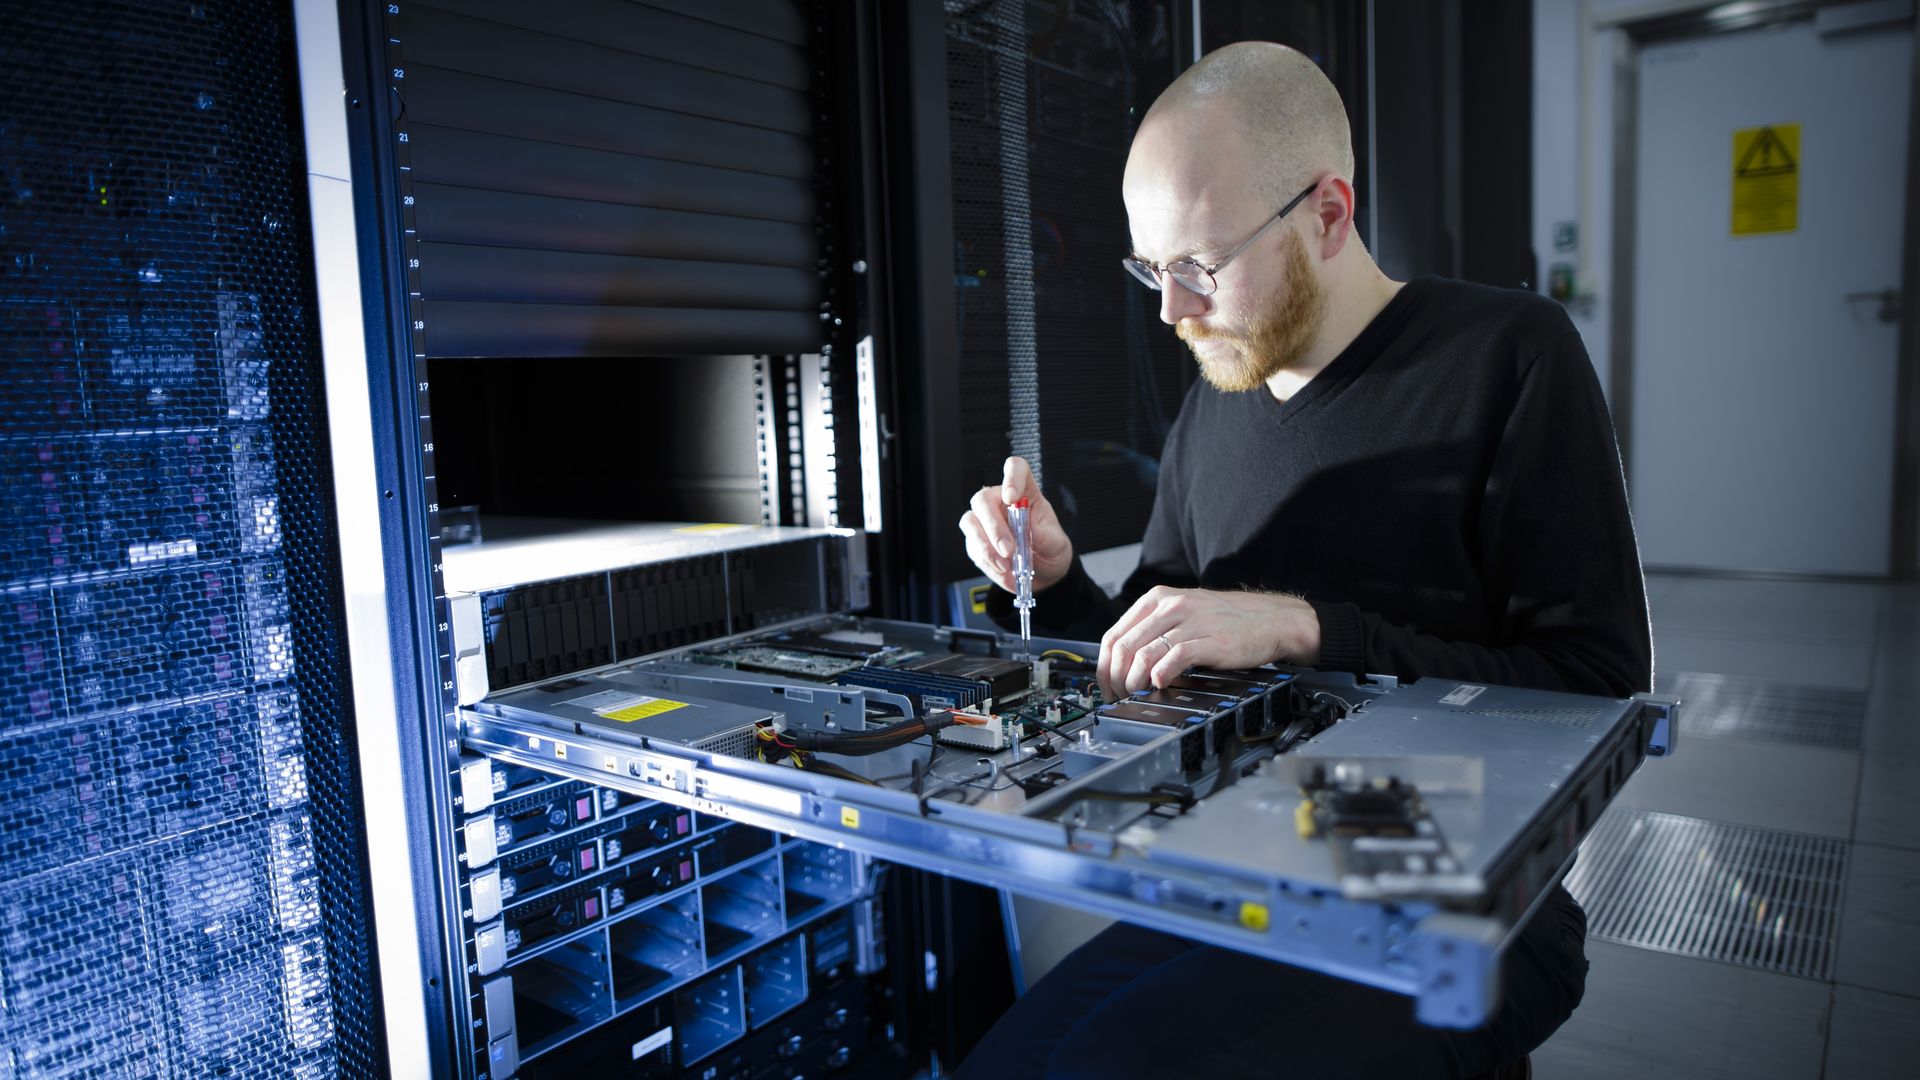 A man unscrews a server part in a data center.